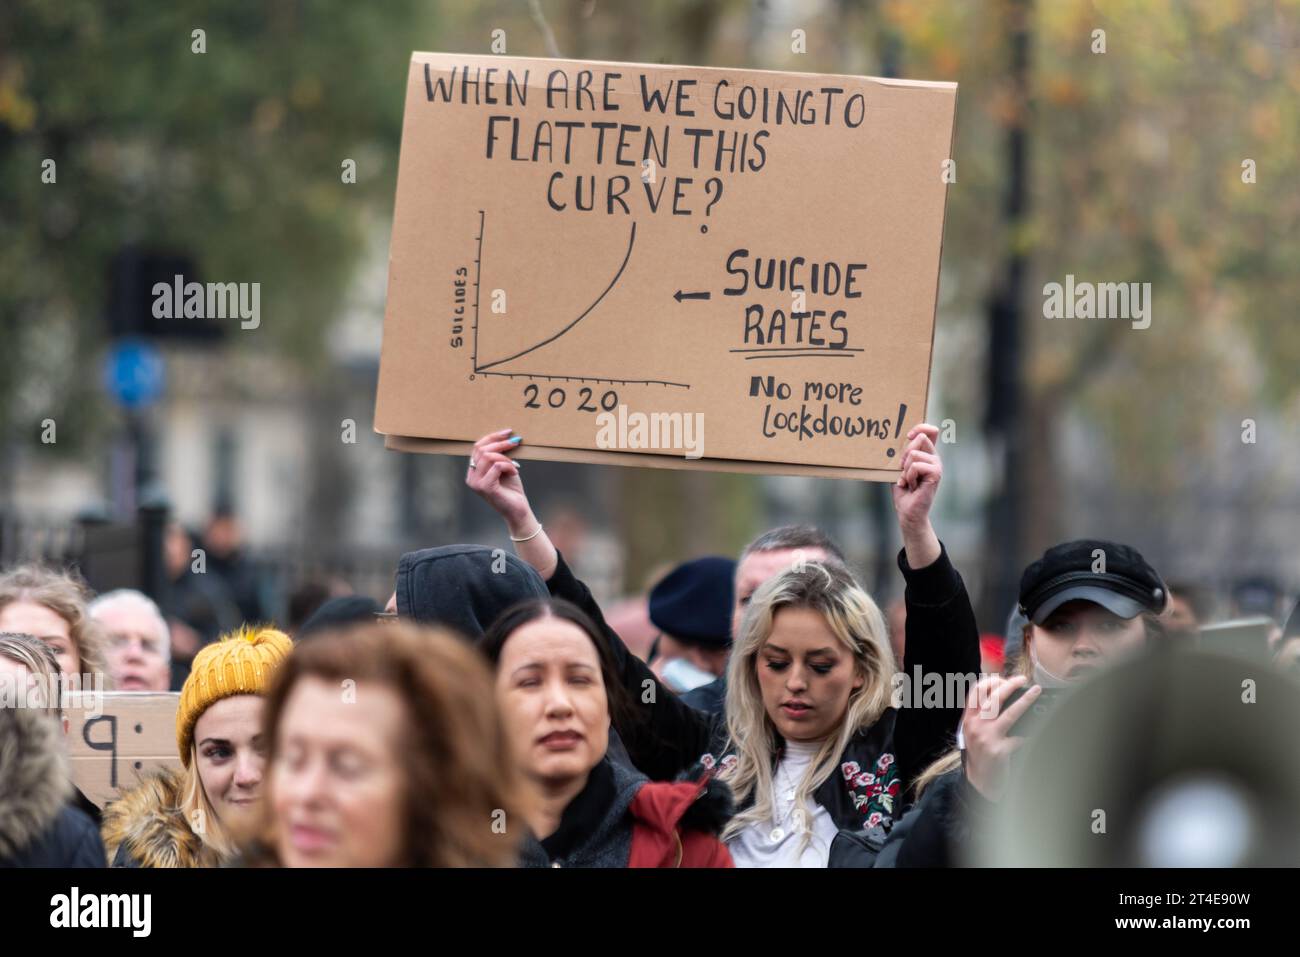 Affiche illustrant le taux de suicide pendant le confinement lors d'une marche de protestation anti-confinement contre le coronavirus COVID 19 à Londres, Royaume-Uni. Aplatir le graphique de courbe Banque D'Images